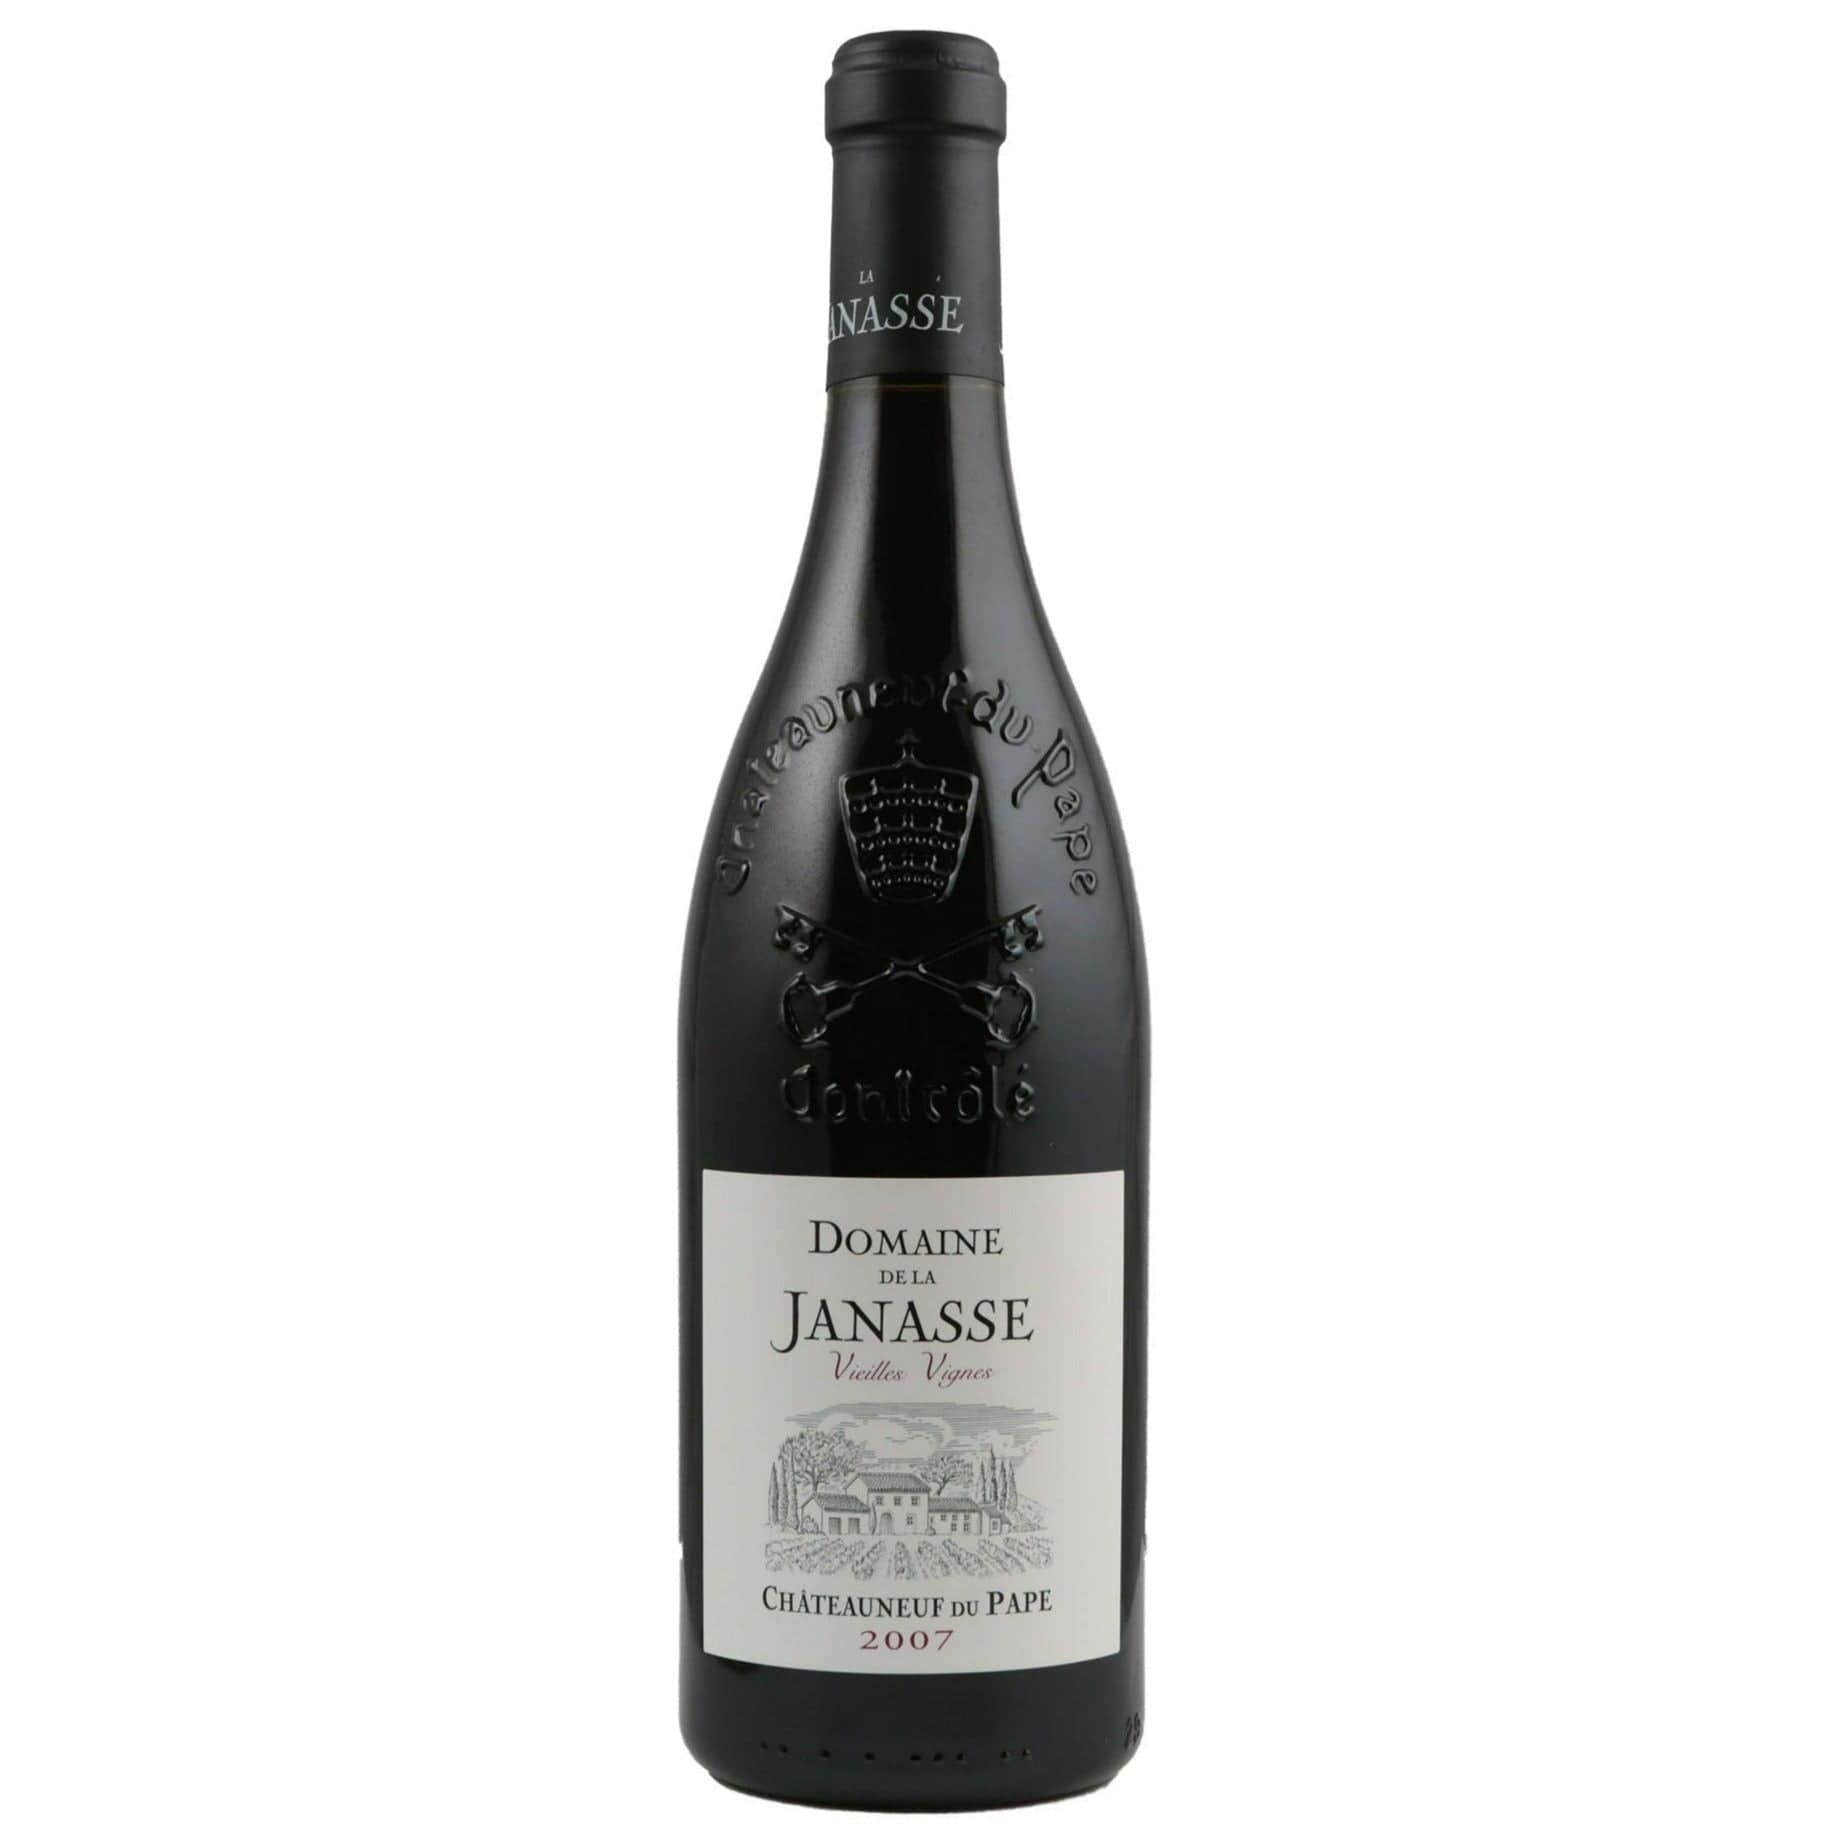 Single bottle of Red wine Domaine de la Janasse, CDP Vieilles Vignes, Chateauneuf du Pape, 2007 Grenache, Mourvedre & Syrah